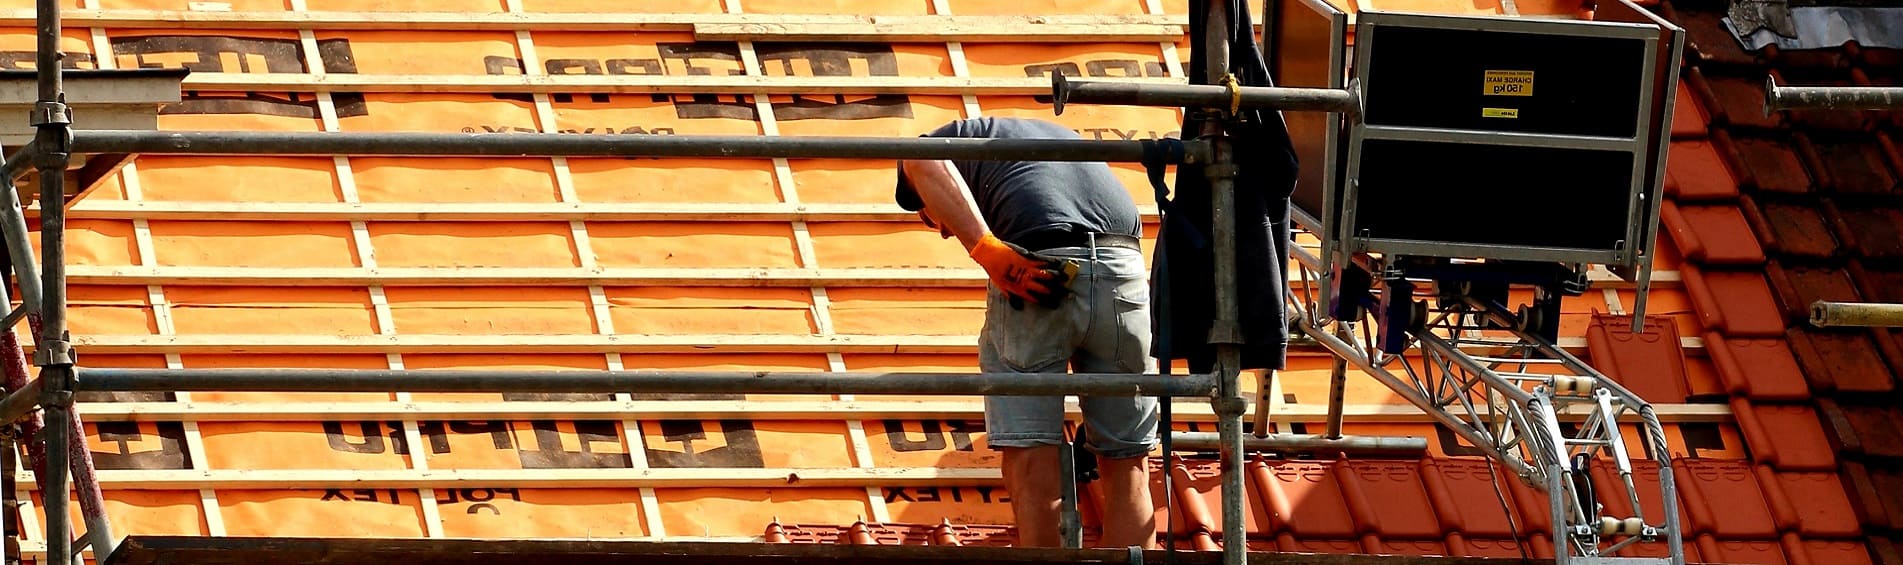 neue Dacheindeckung von Steildach professionelle Dachdecker Hamburg